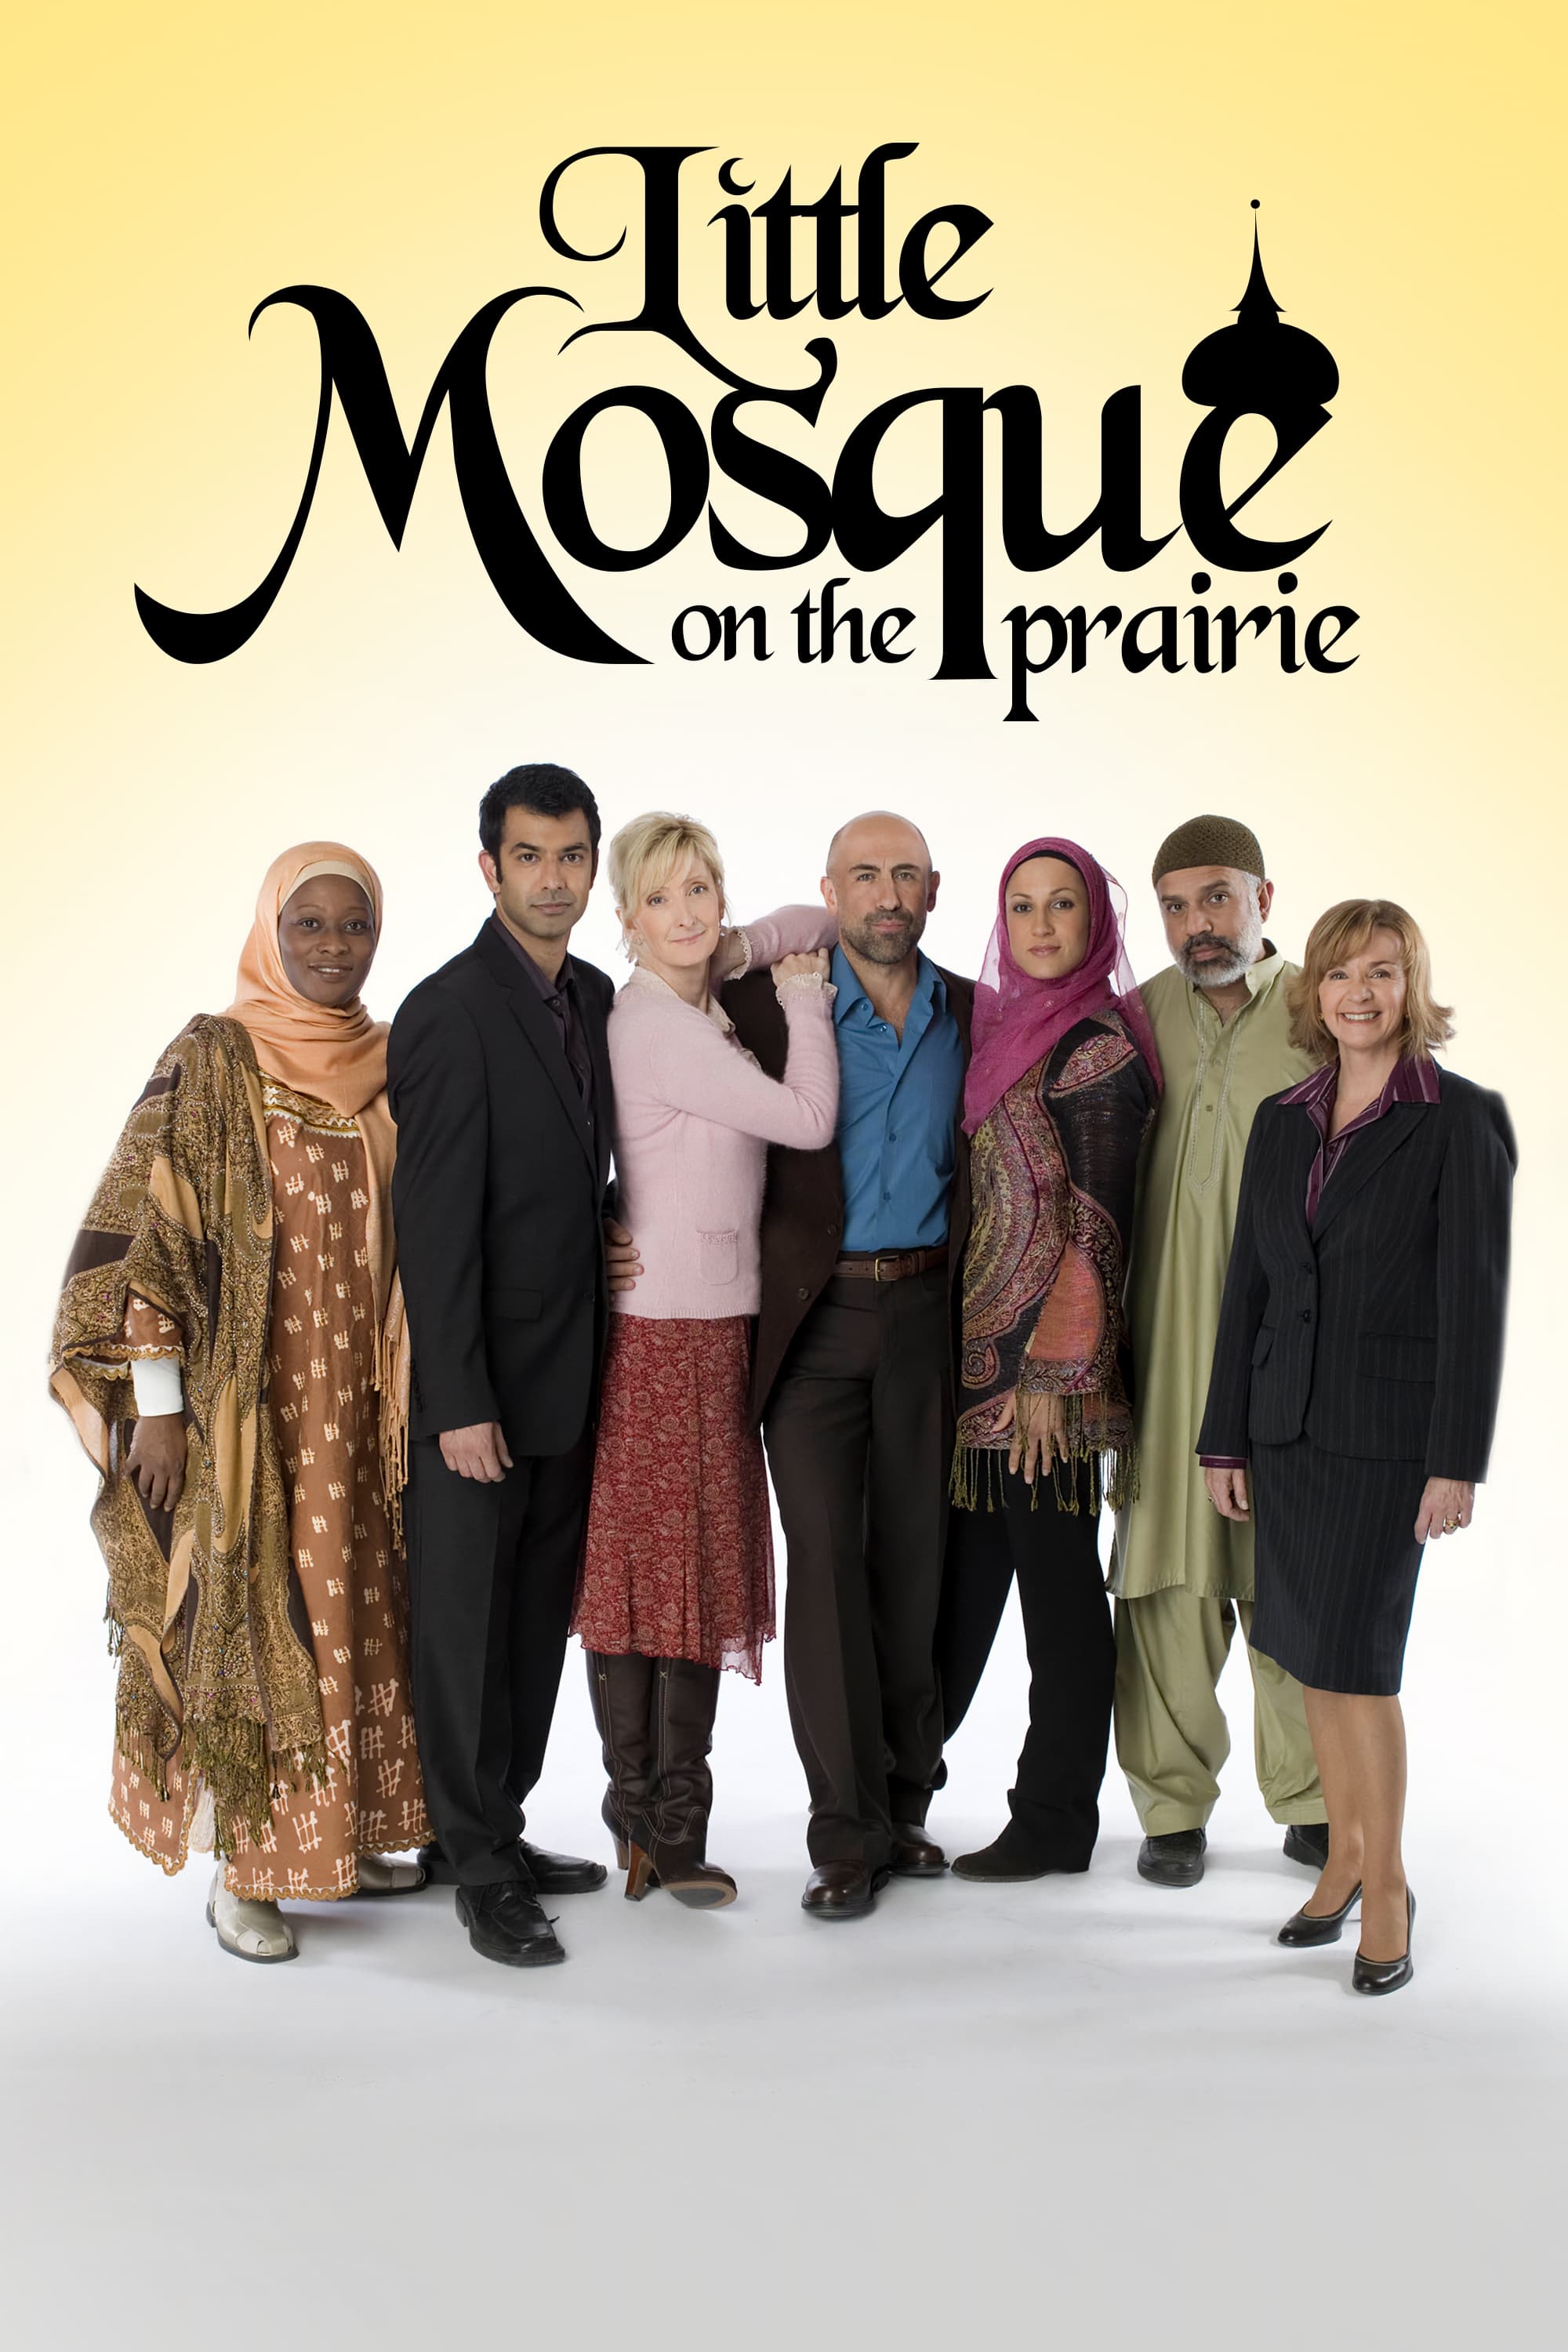 La Petite Mosquée dans la prairie